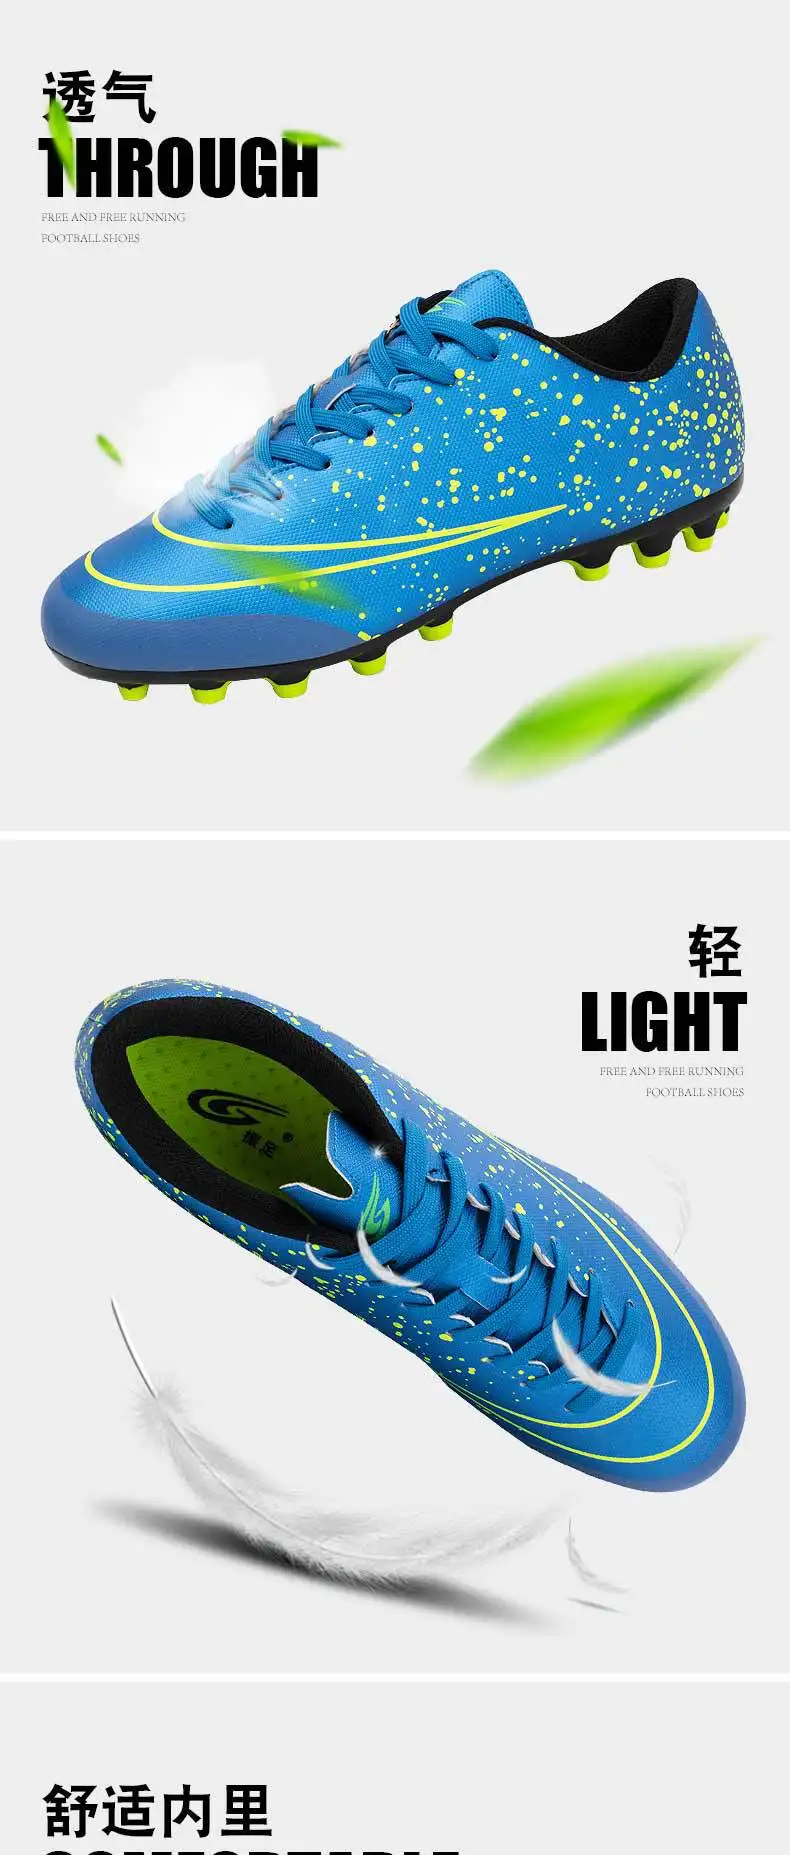 Zhen zu подлинный продукт AG ногтей футбольные бутсы небесно-голубой искусственный газон подростка начальной школы студентов взрослых мужчин и женщин Trai